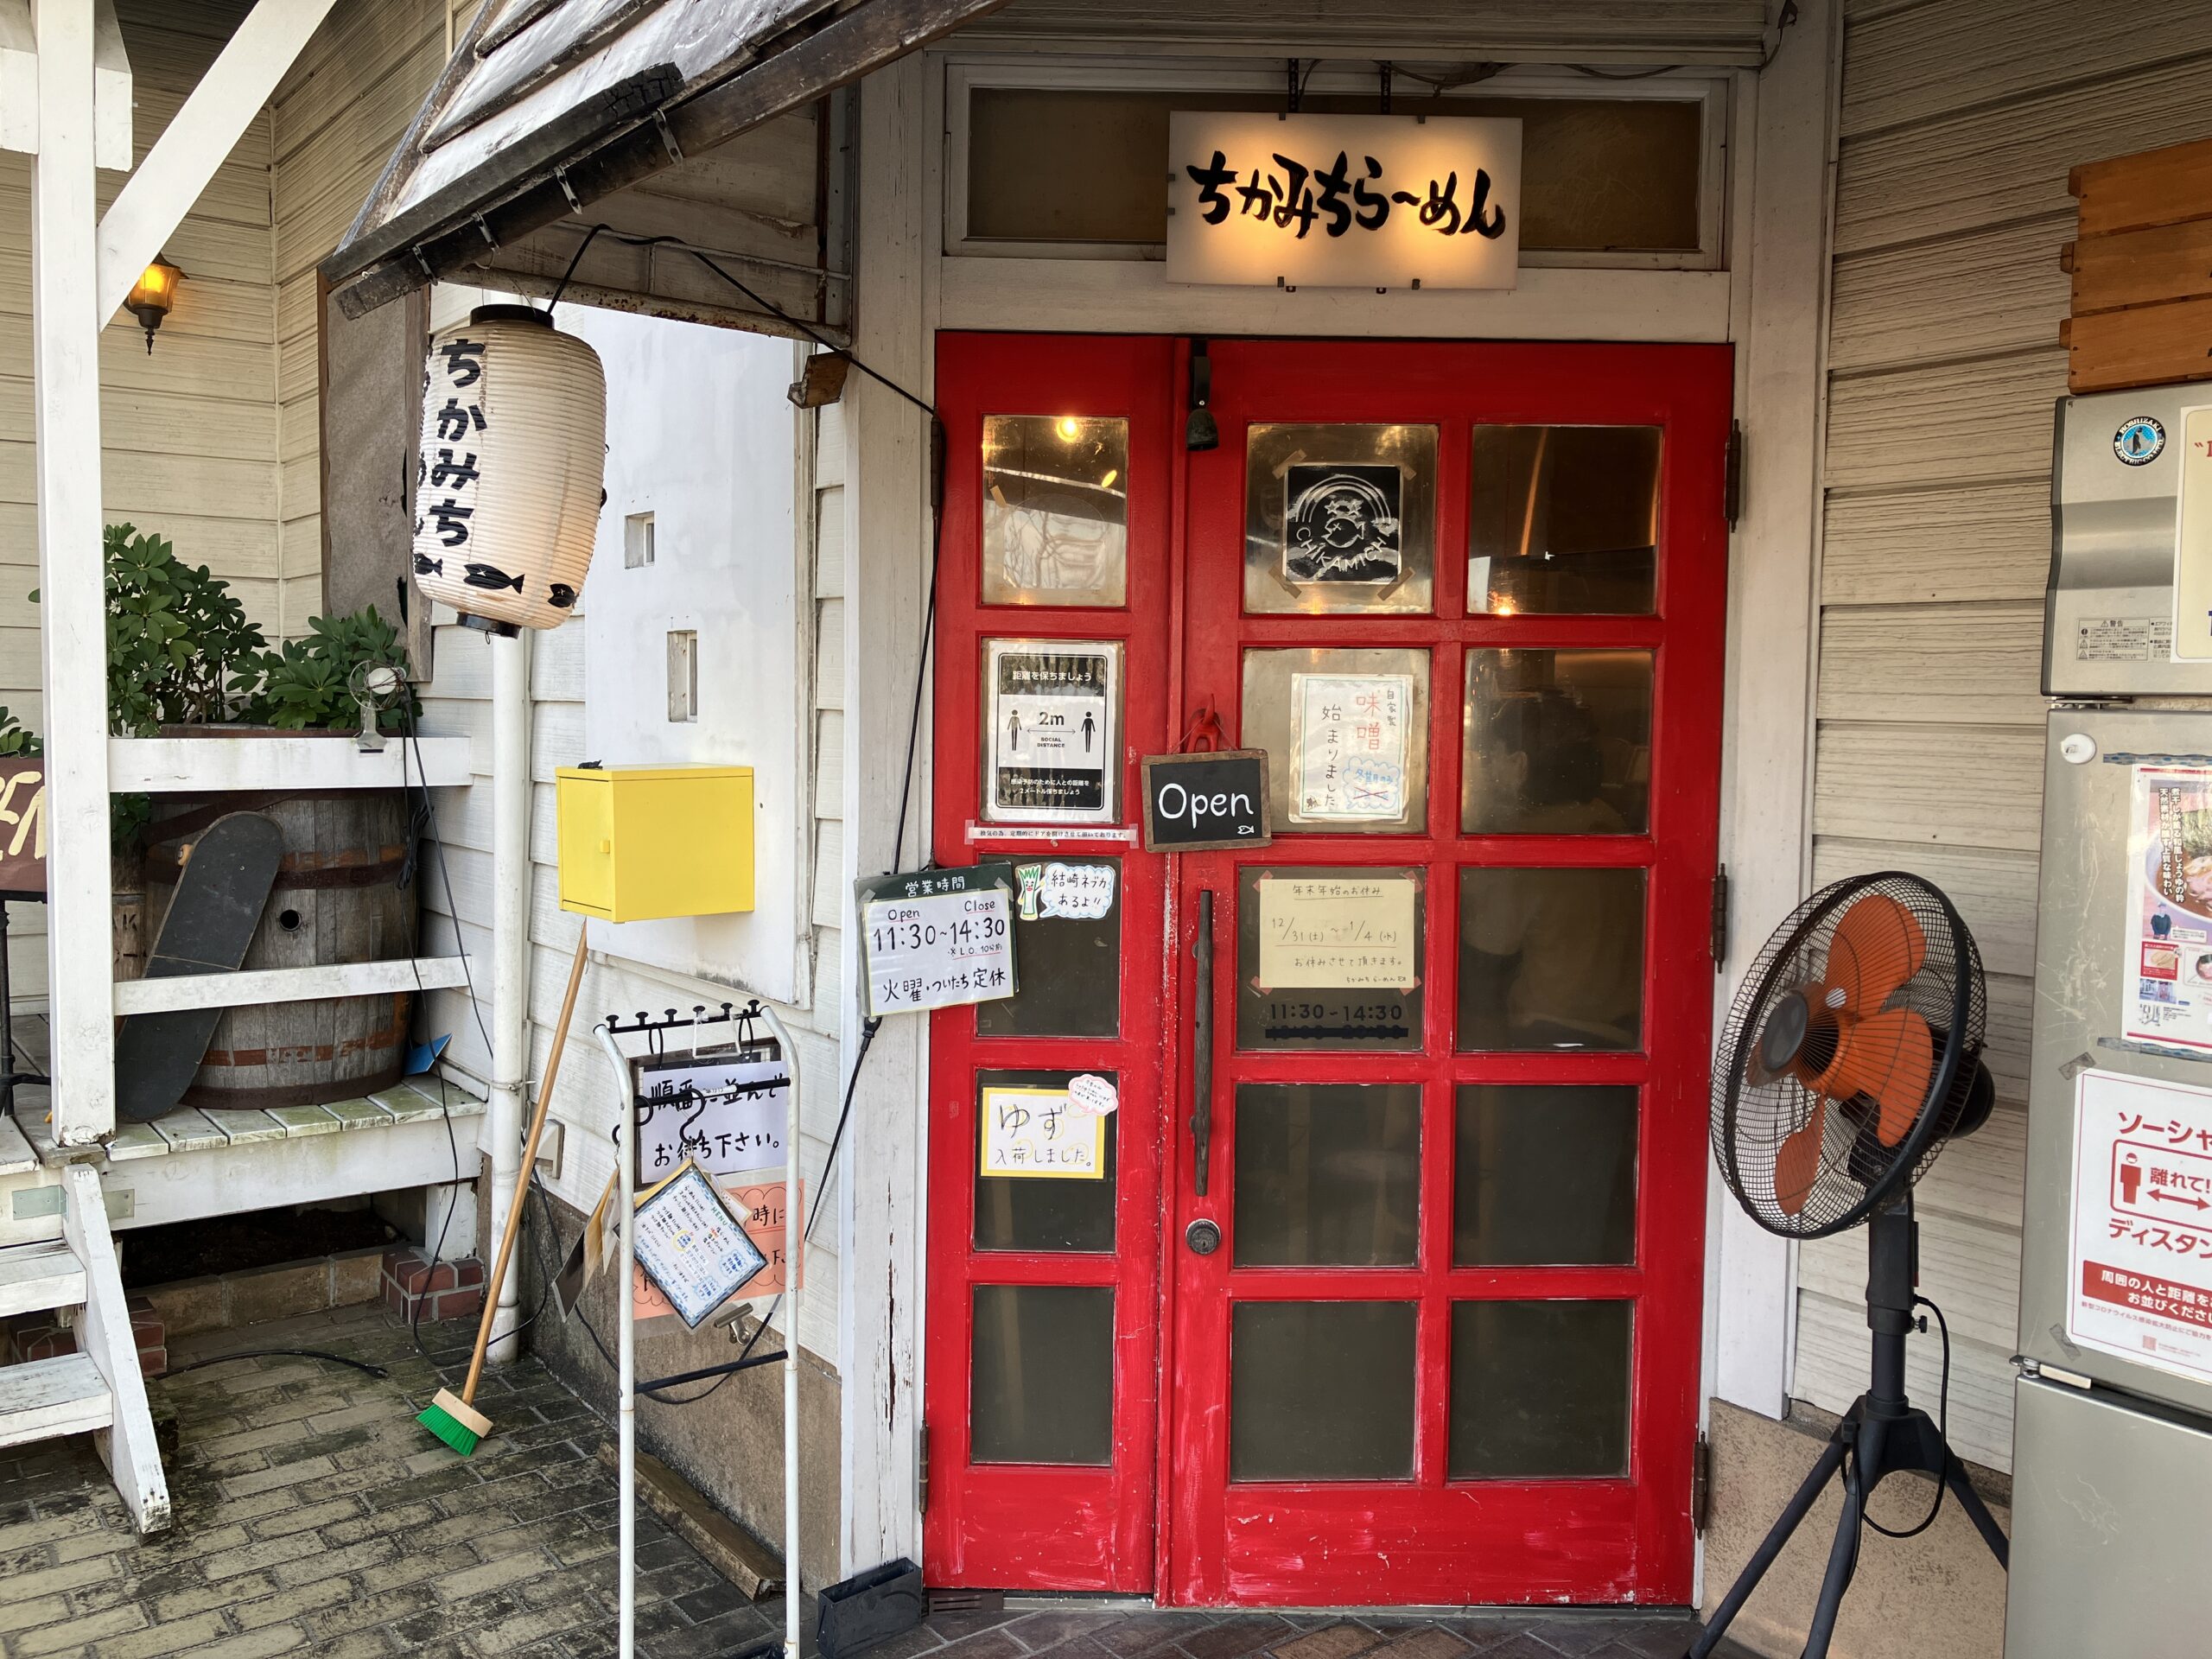 奈良県川西町で有名な人気ラーメン店「ちかみちらーめん」の外観写真